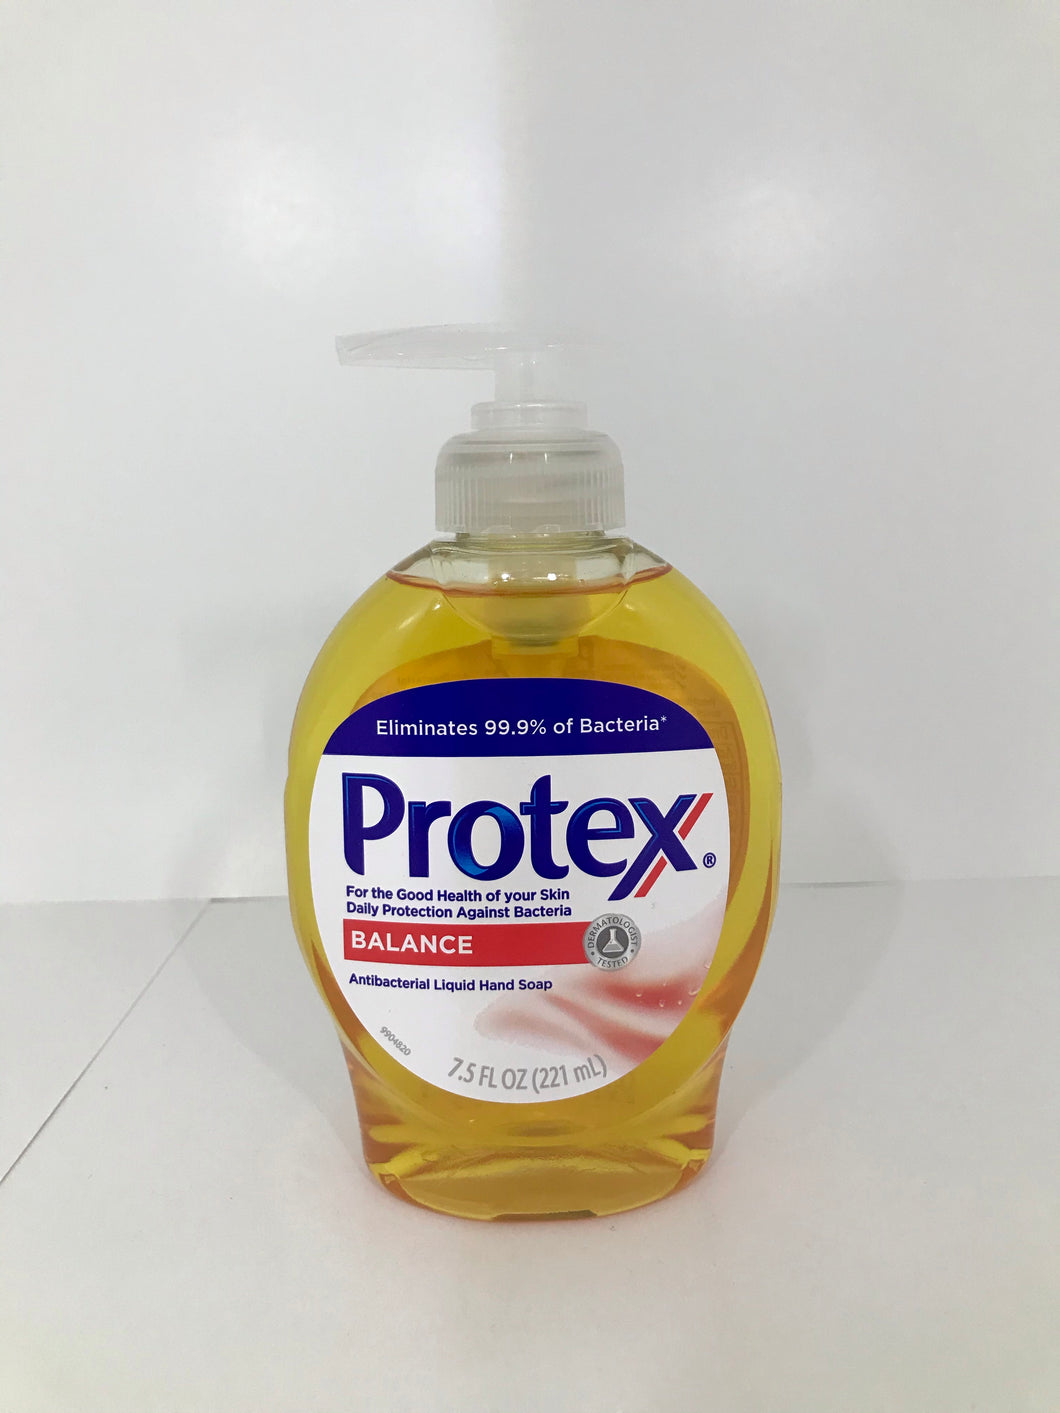 Protex antibacterial liquid hand soap